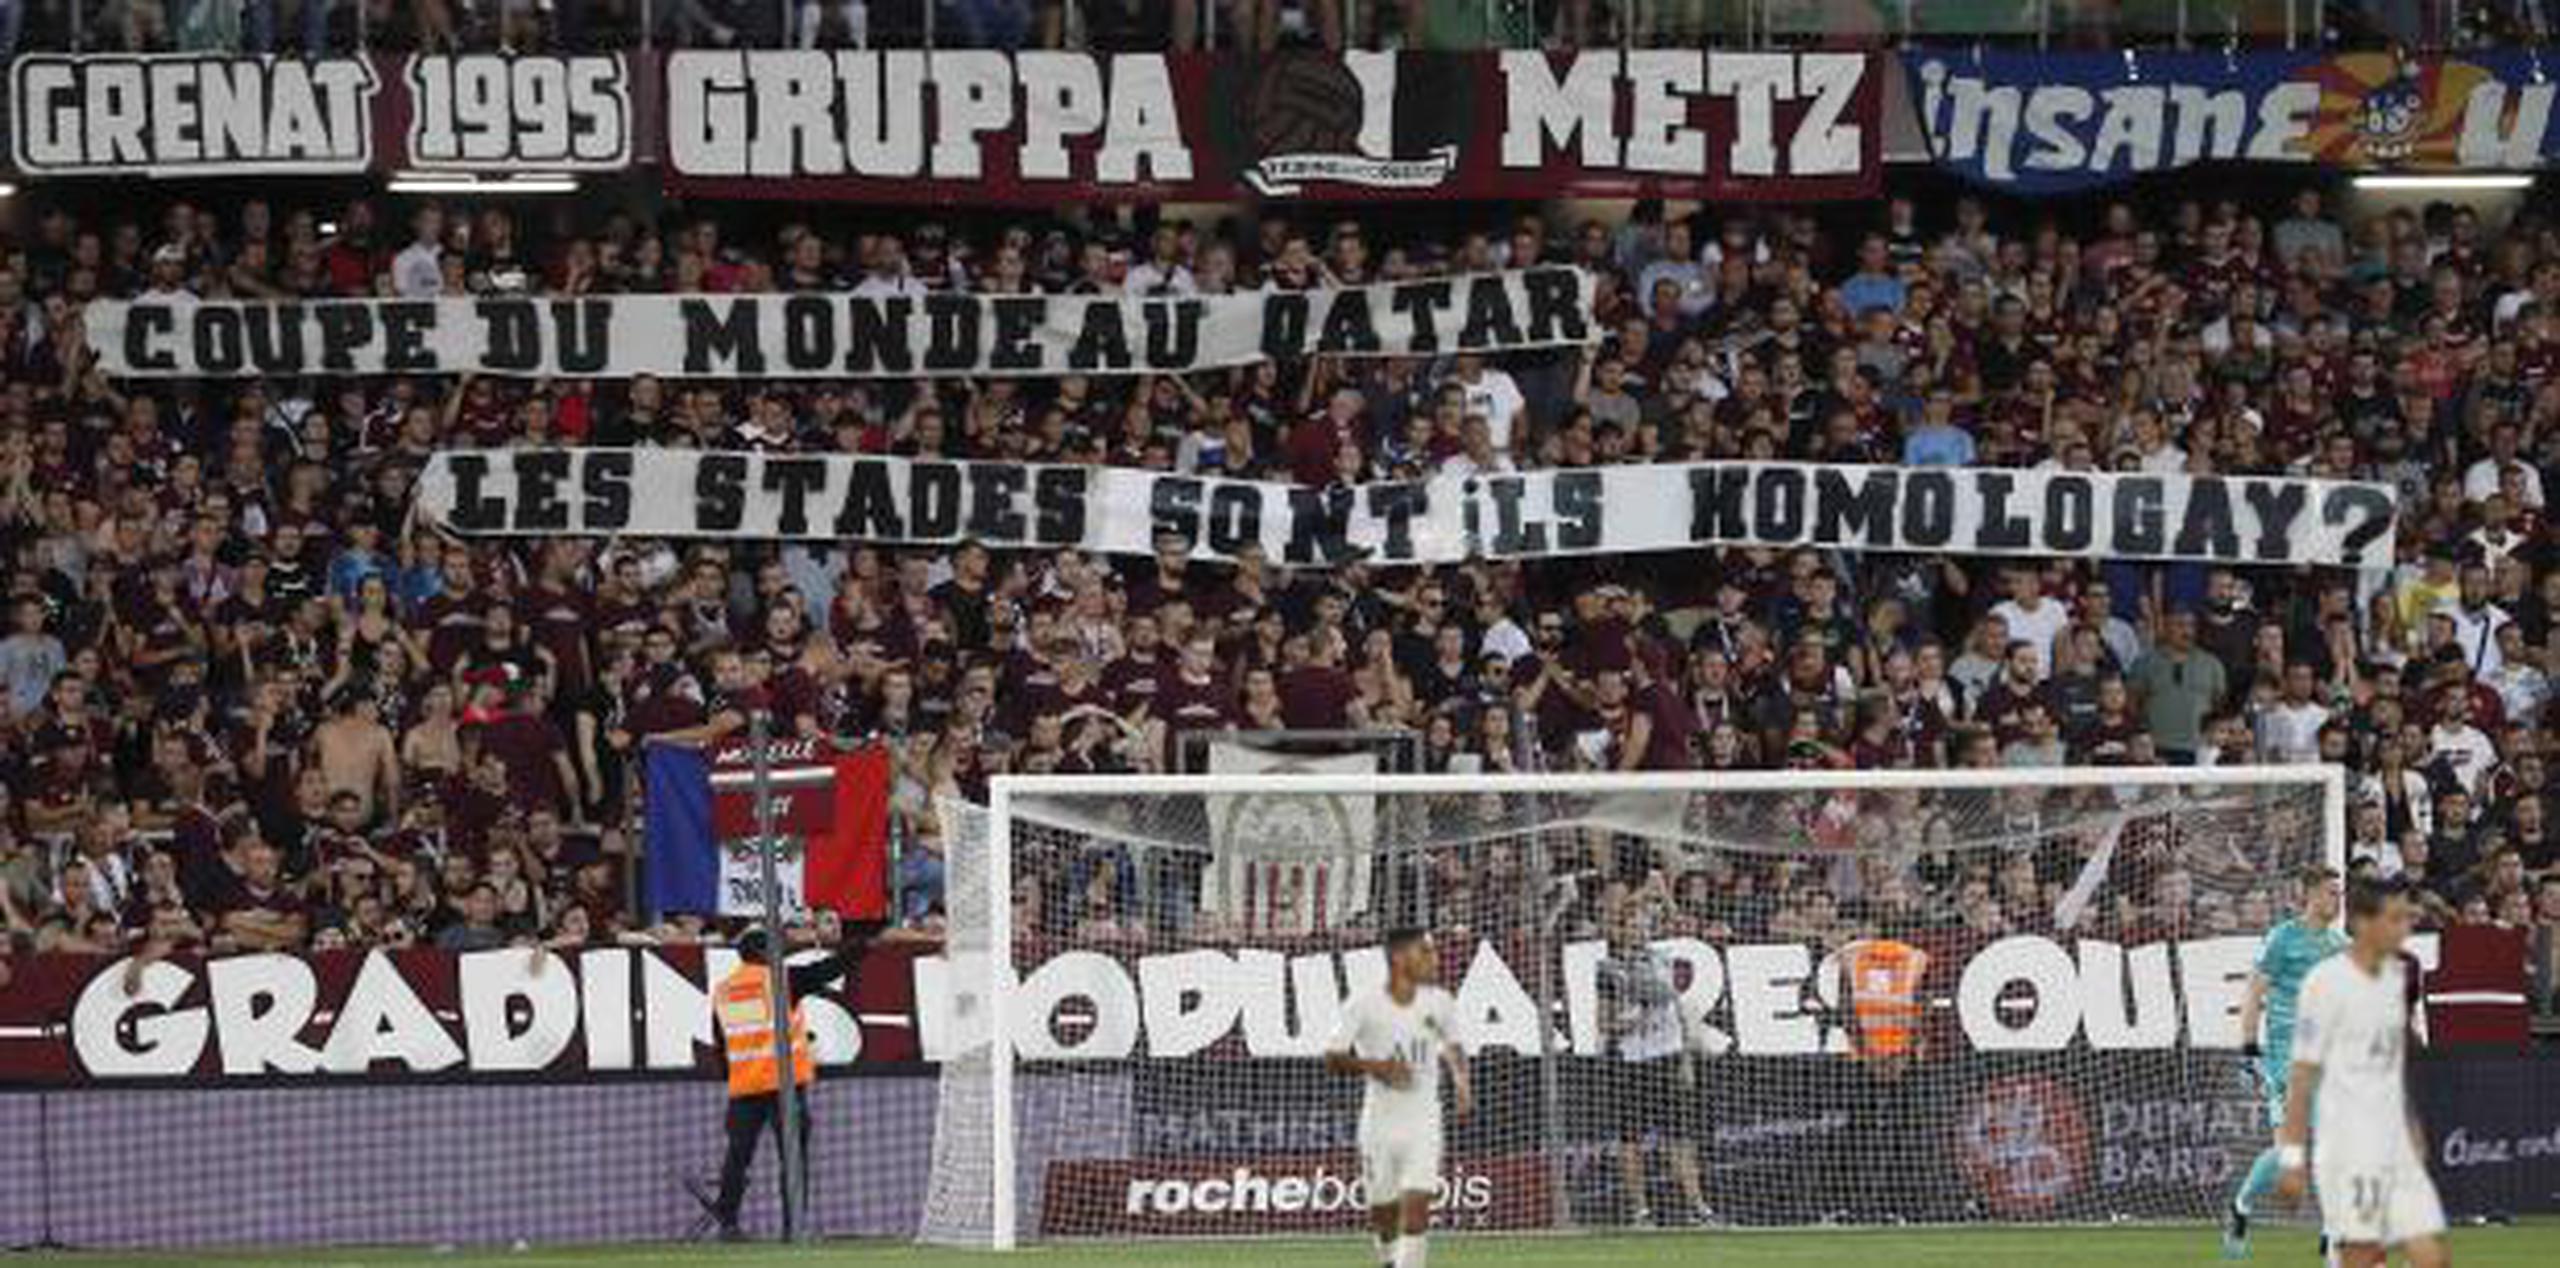 Los aficionados del Metz sostienen pancartas con consignas homofóbicas durante el juego de la Liga Uno francesa contra París Saint-Germain en Estrasburgo, Francia.  (AP / Jean-Francois Badias)